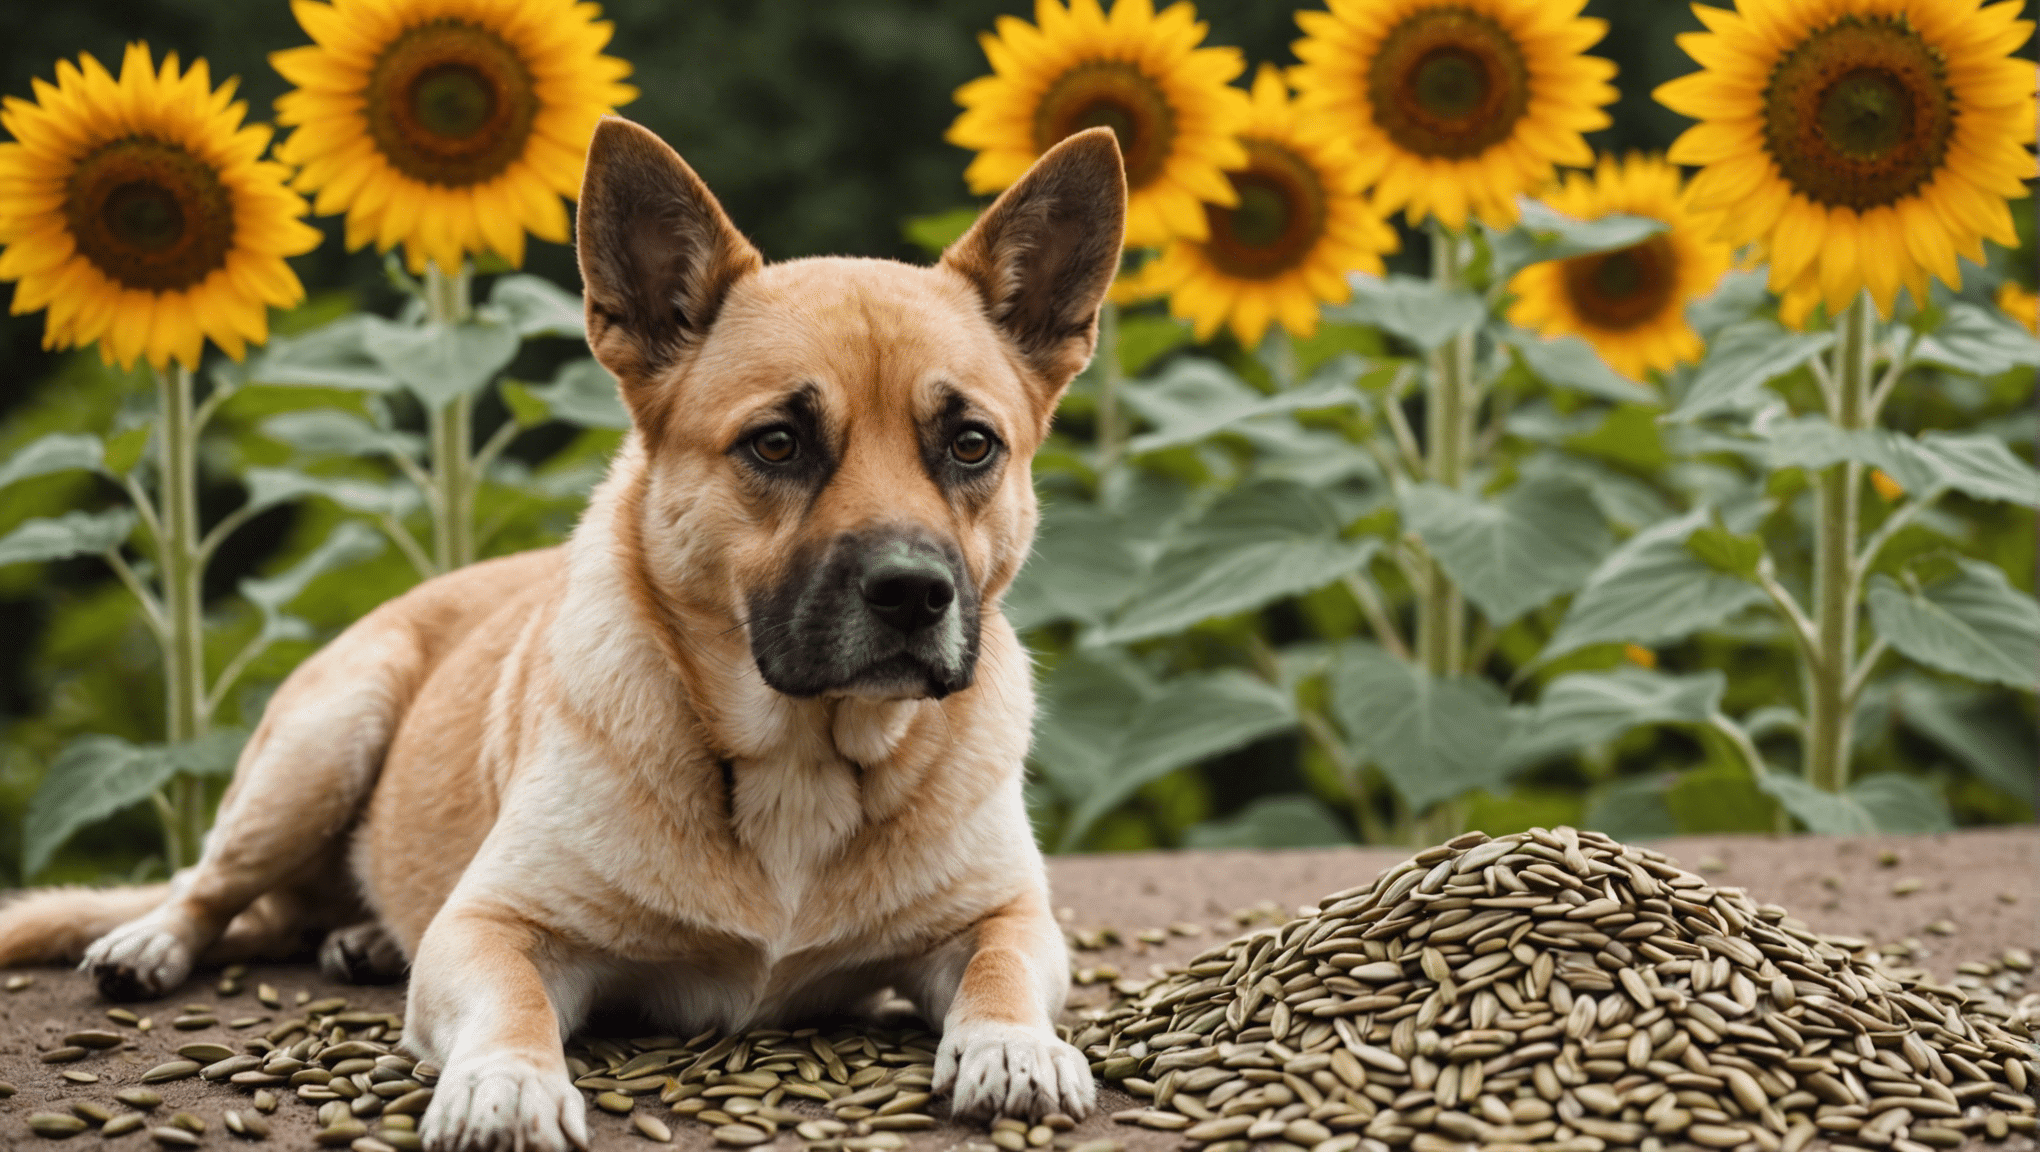 גלה אם זרעי חמניות בטוחים לכלבים לאכילה ולמד על סיכונים ויתרונות פוטנציאליים עבור בן לוויתך הכלב.